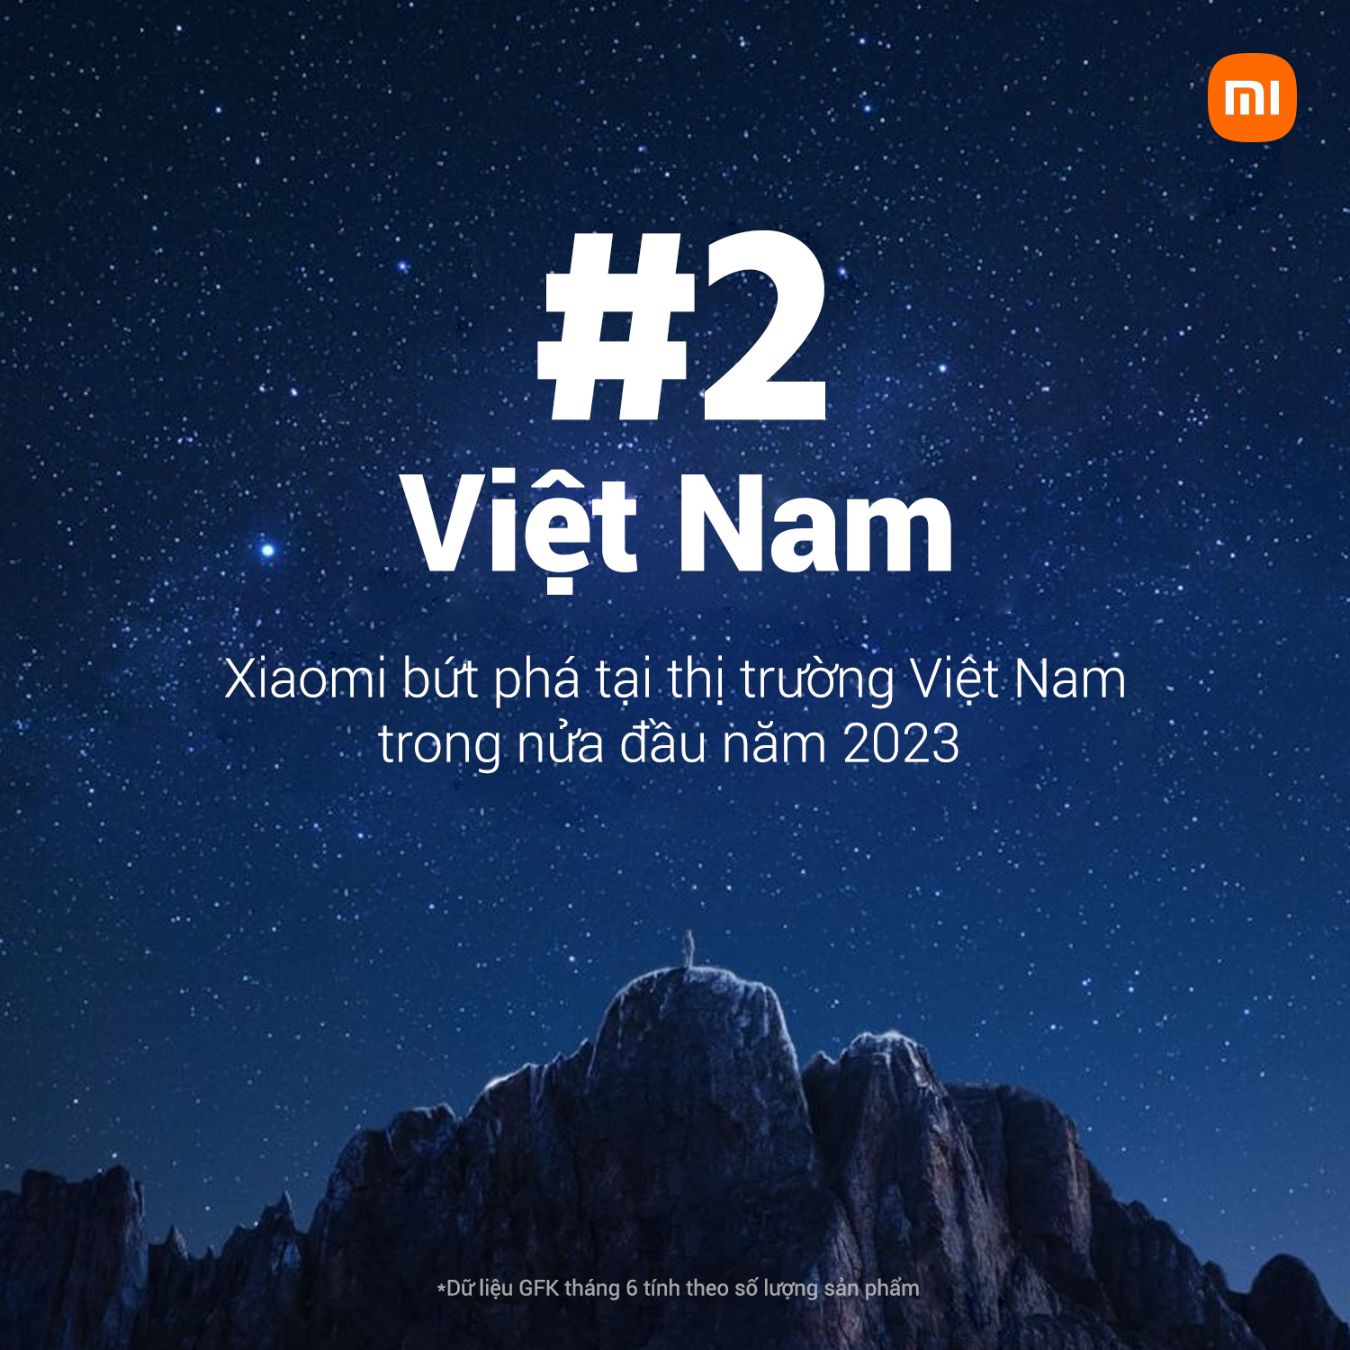 smartphone 1 Xiaomi bứt phá ngoạn mục với thị phần xếp thứ 2 tại Việt Nam